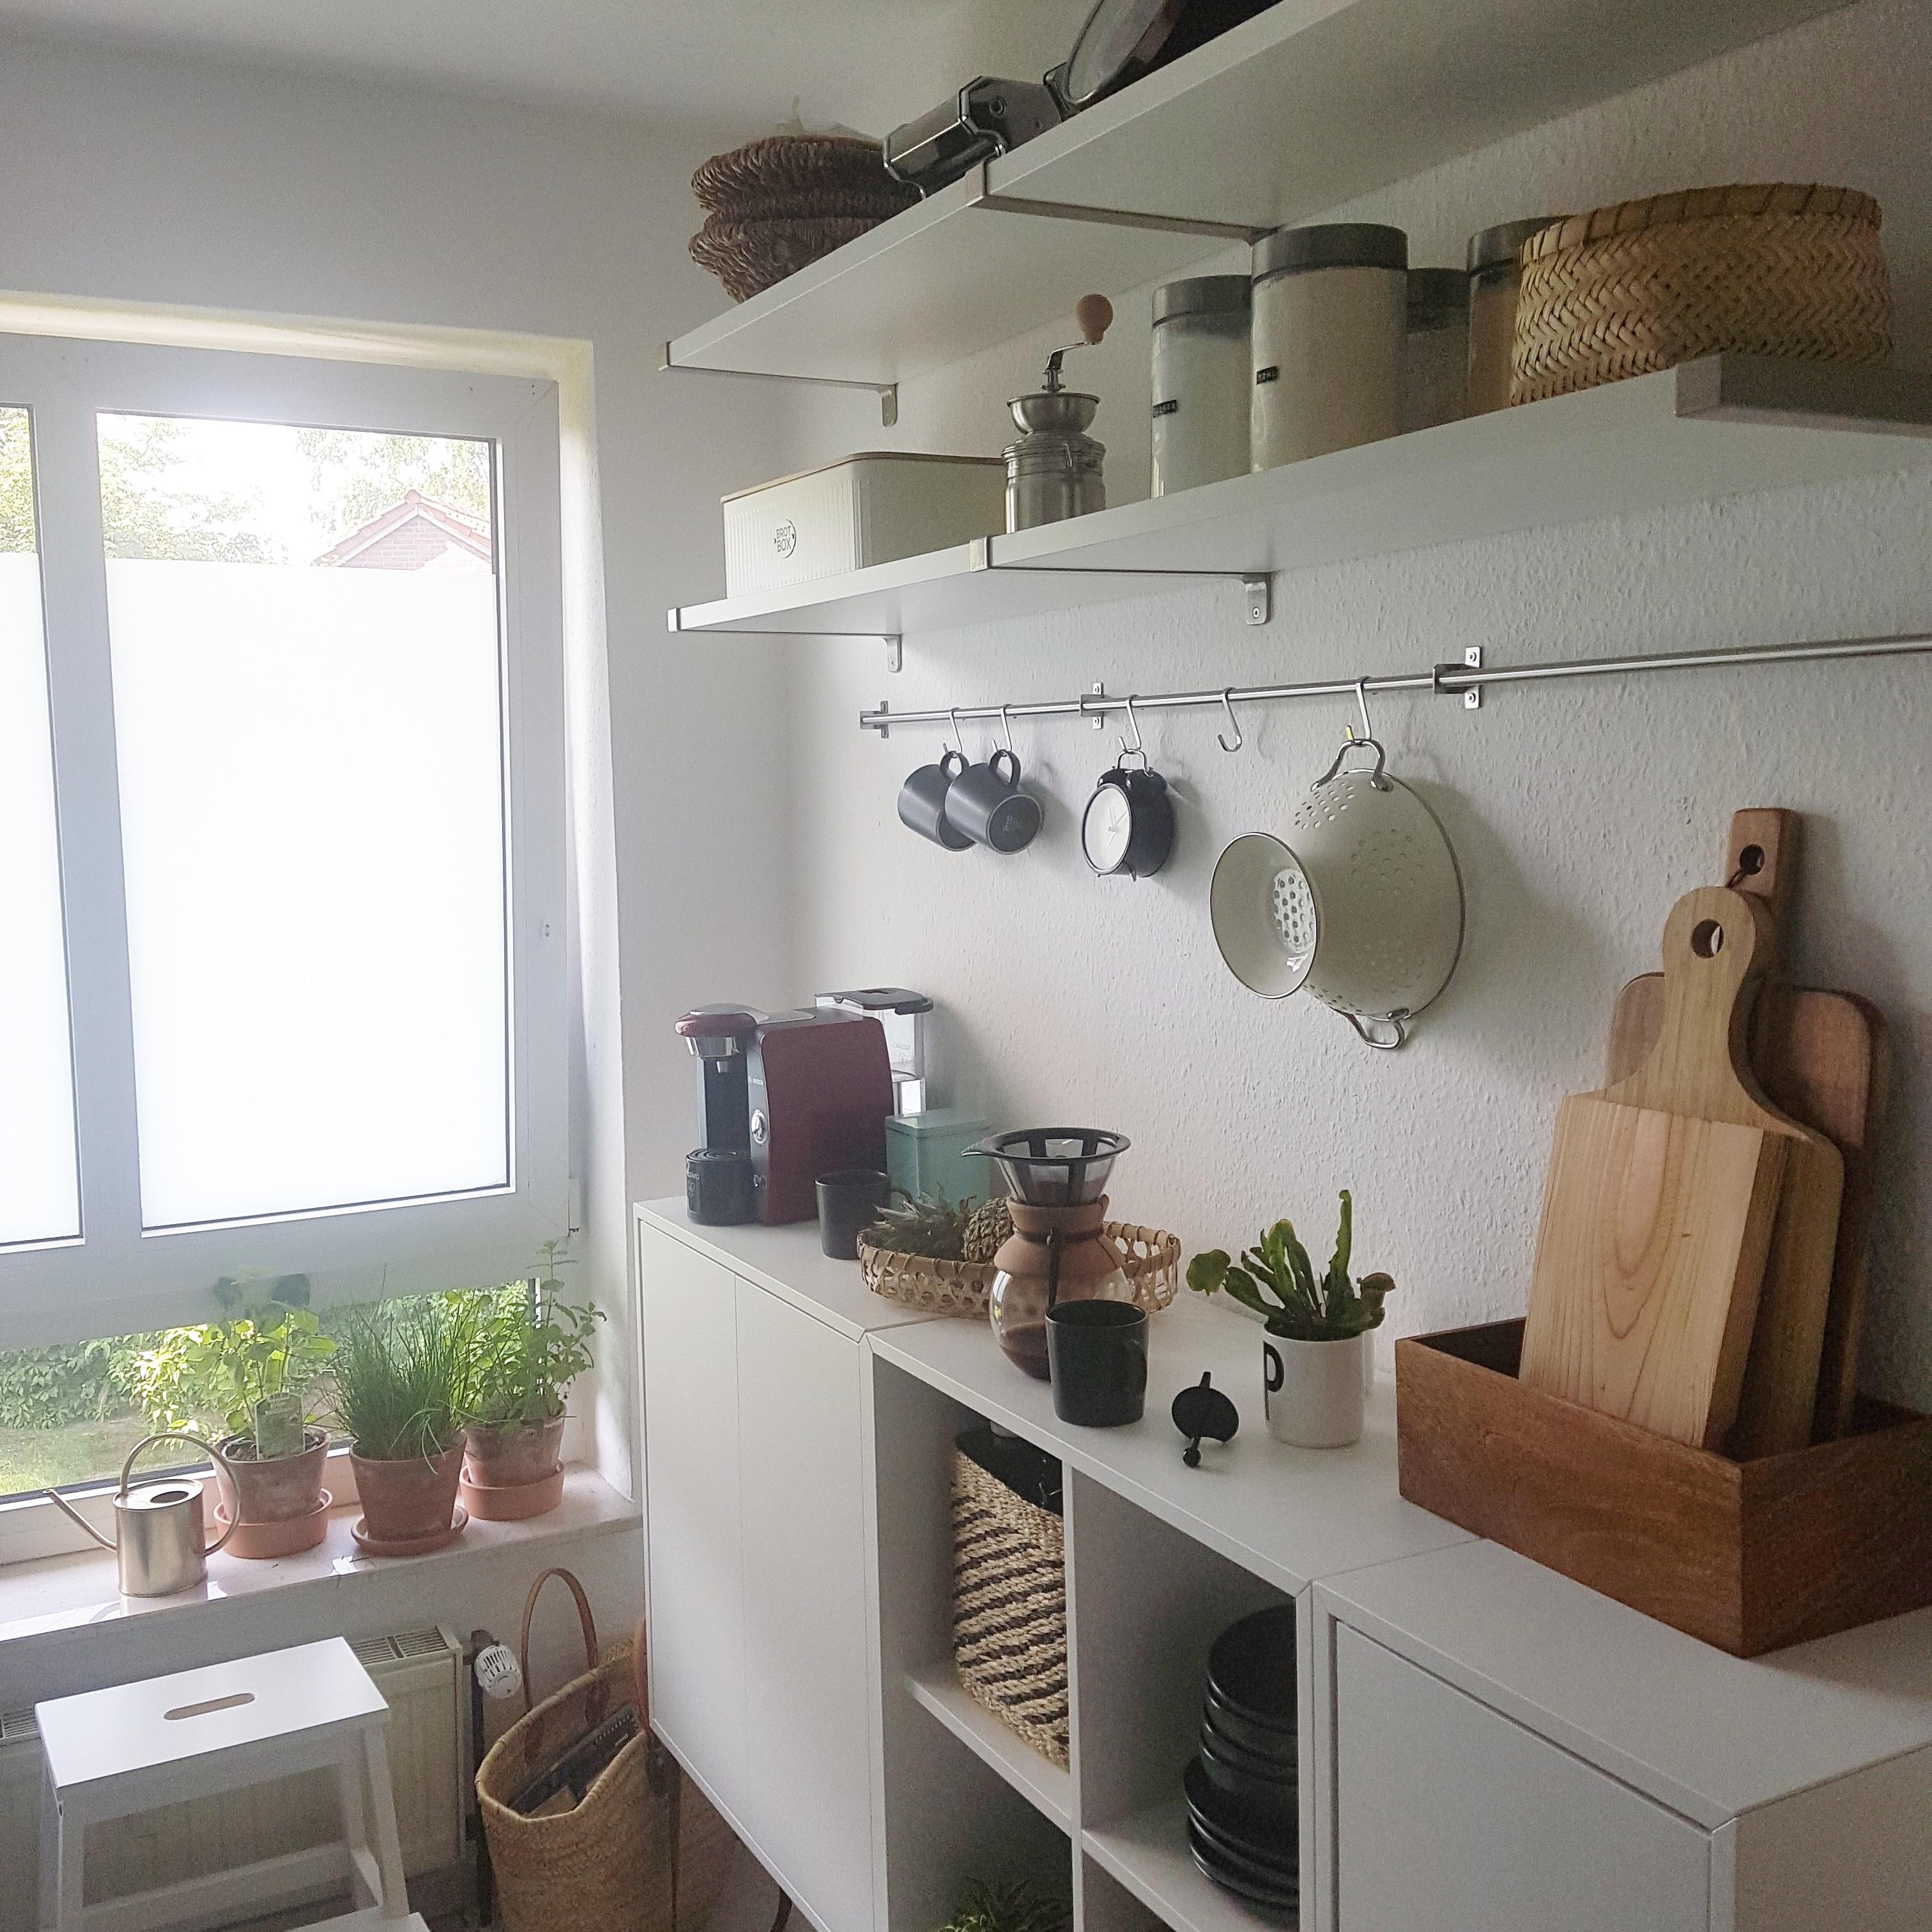 #kitchenlove #interior #kitchen #homelove #küchenliebe #nordicliving #nordichome